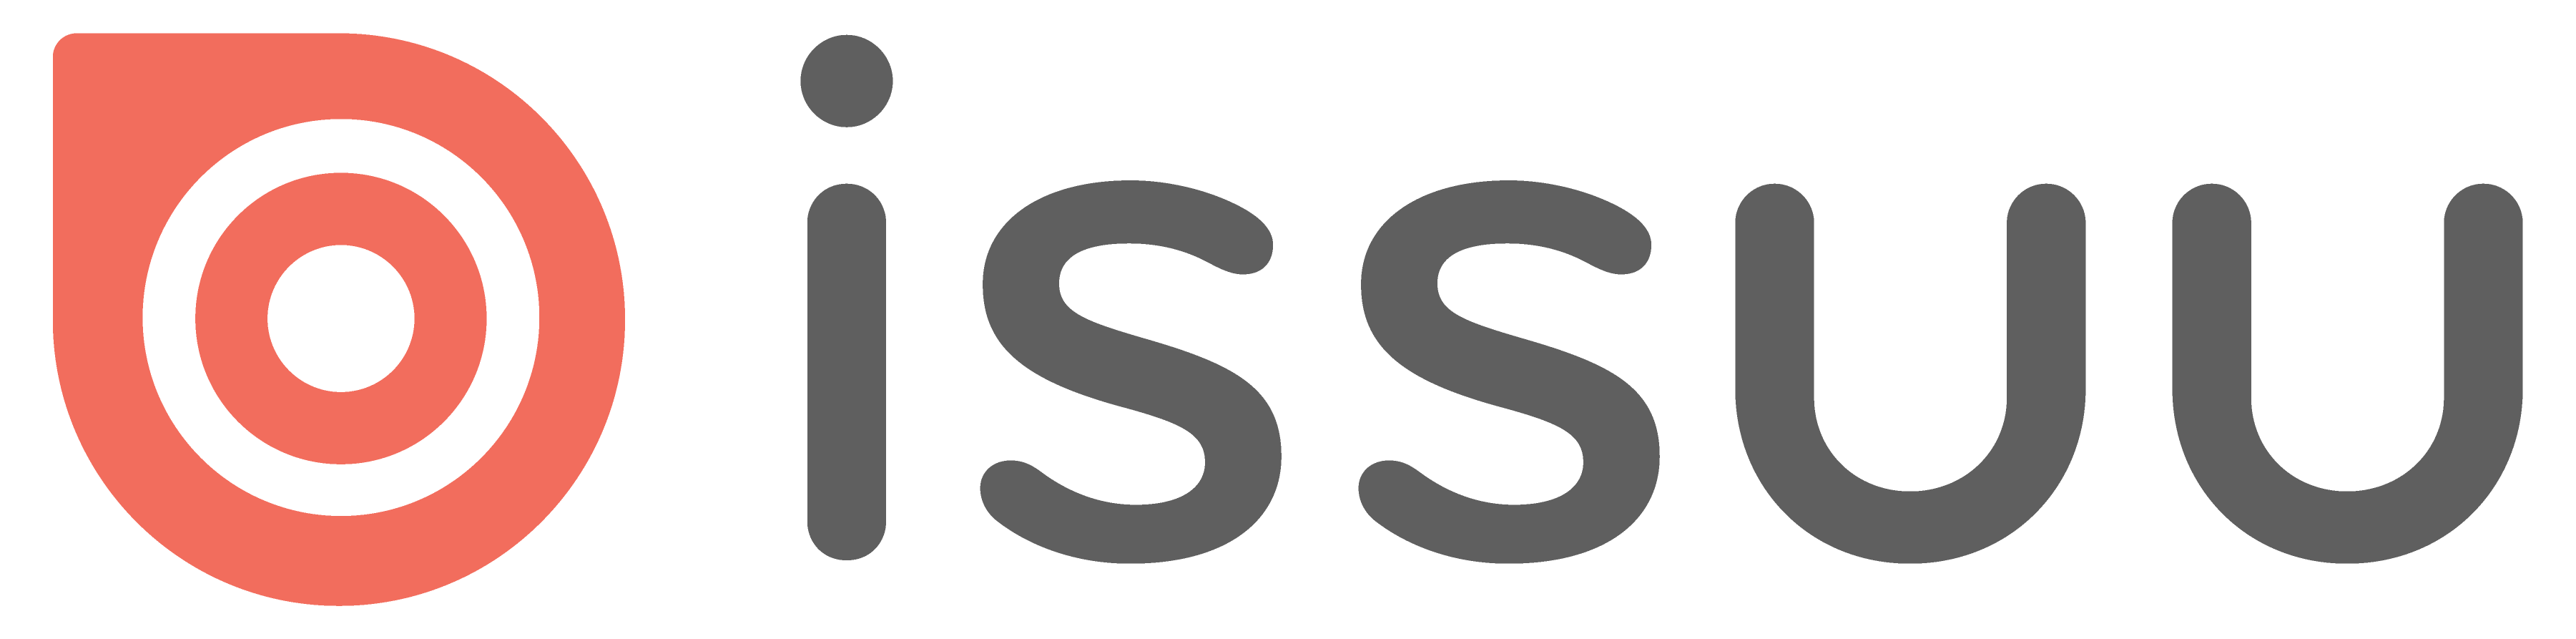 Issuu logo colors